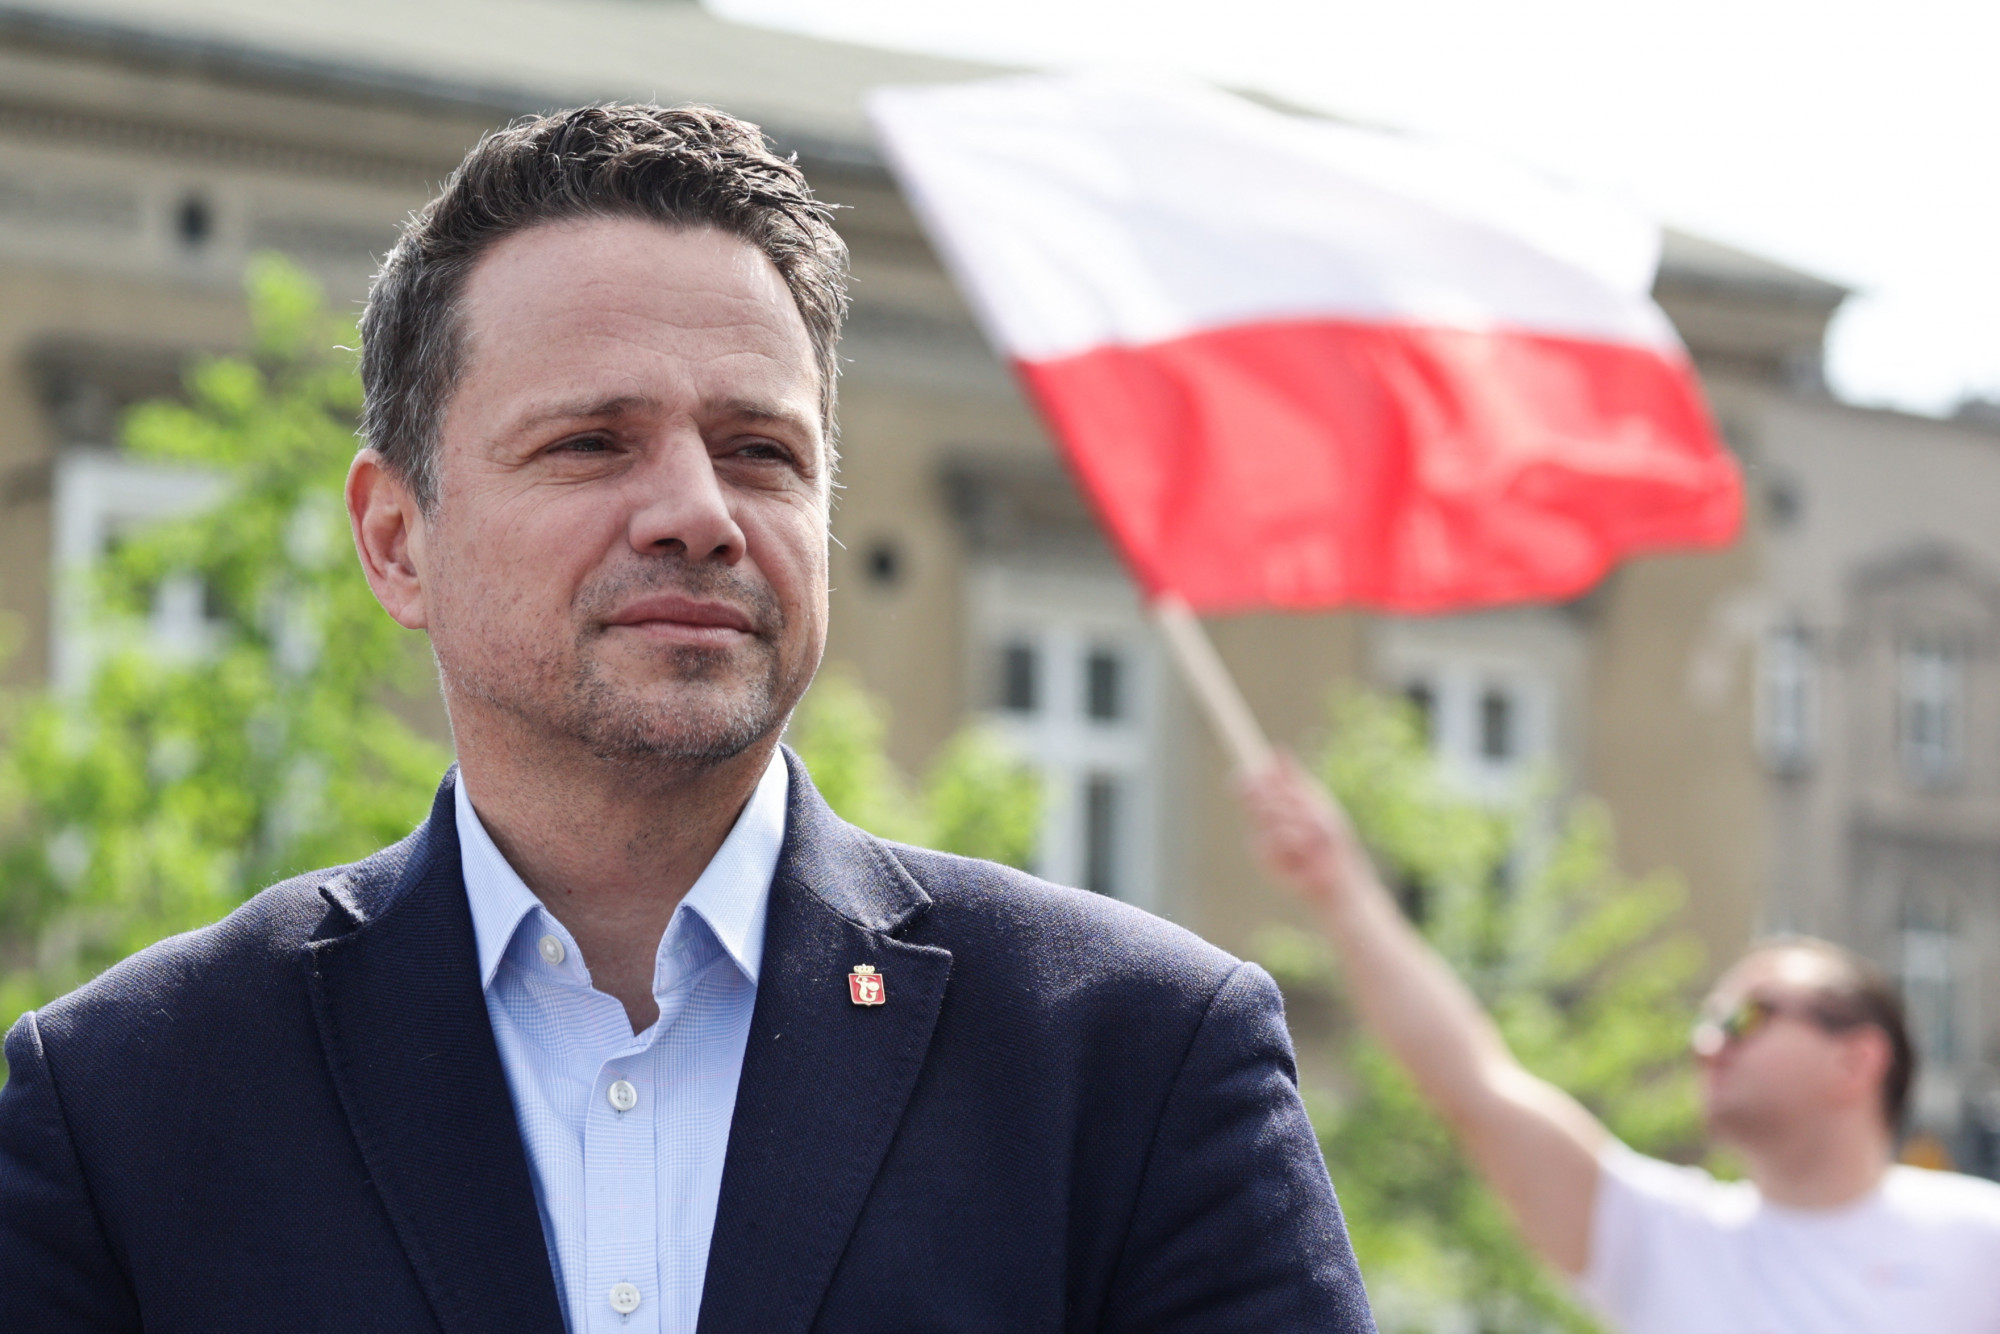 Kitiltotta a vallási jelképeket a városházáról a varsói polgármester